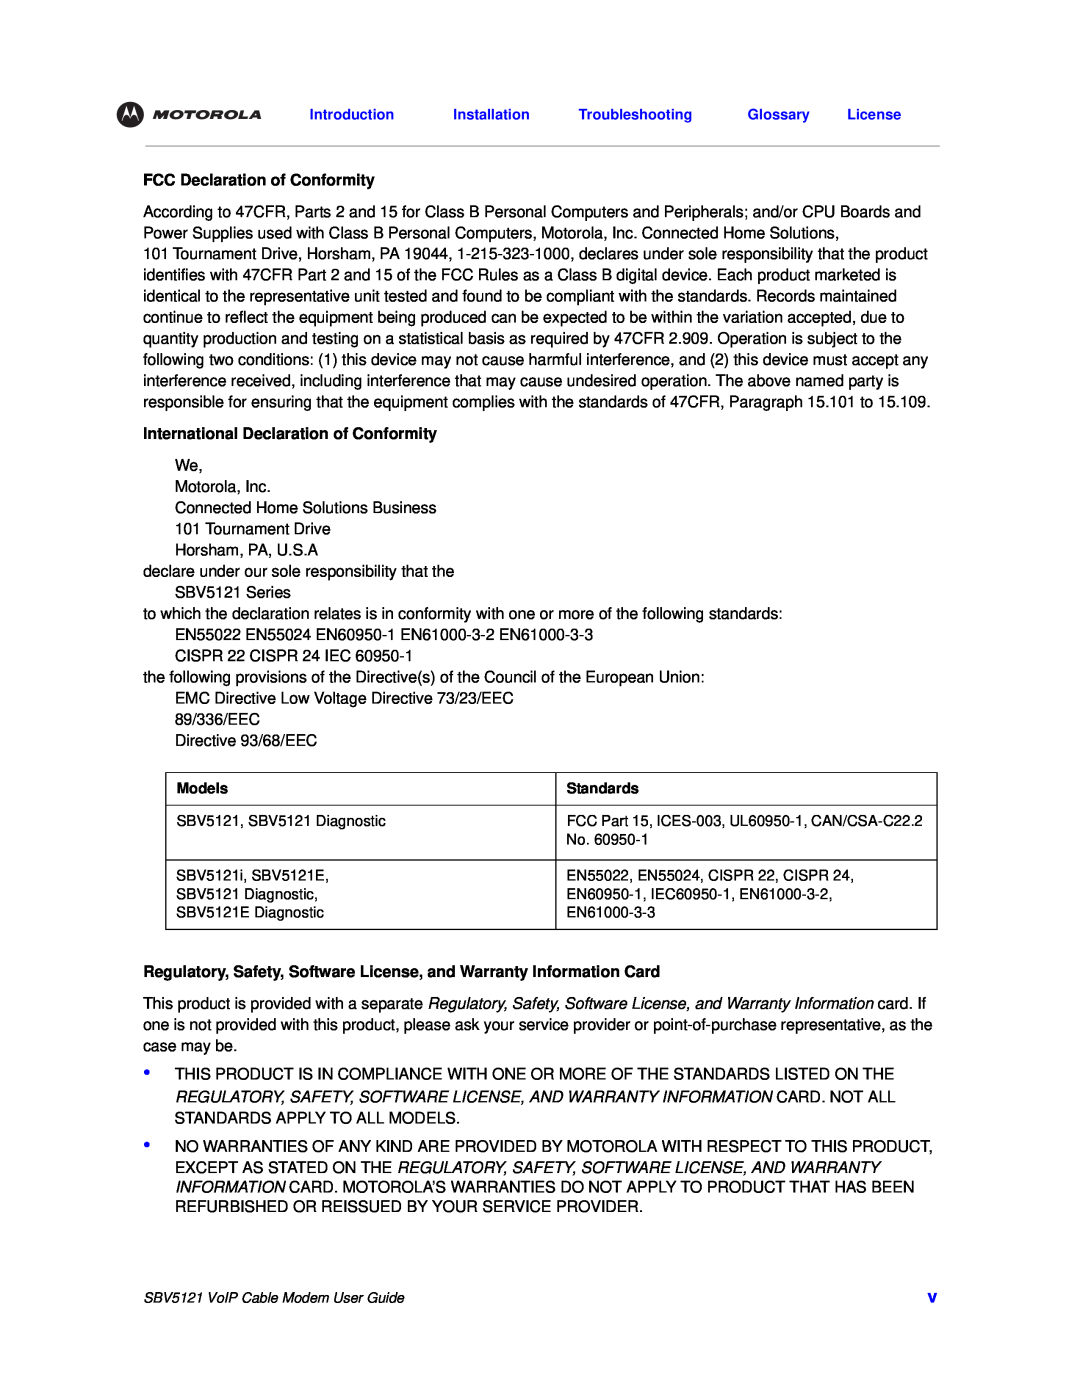 Nikon SBV5121 manual FCC Declaration of Conformity, International Declaration of Conformity 